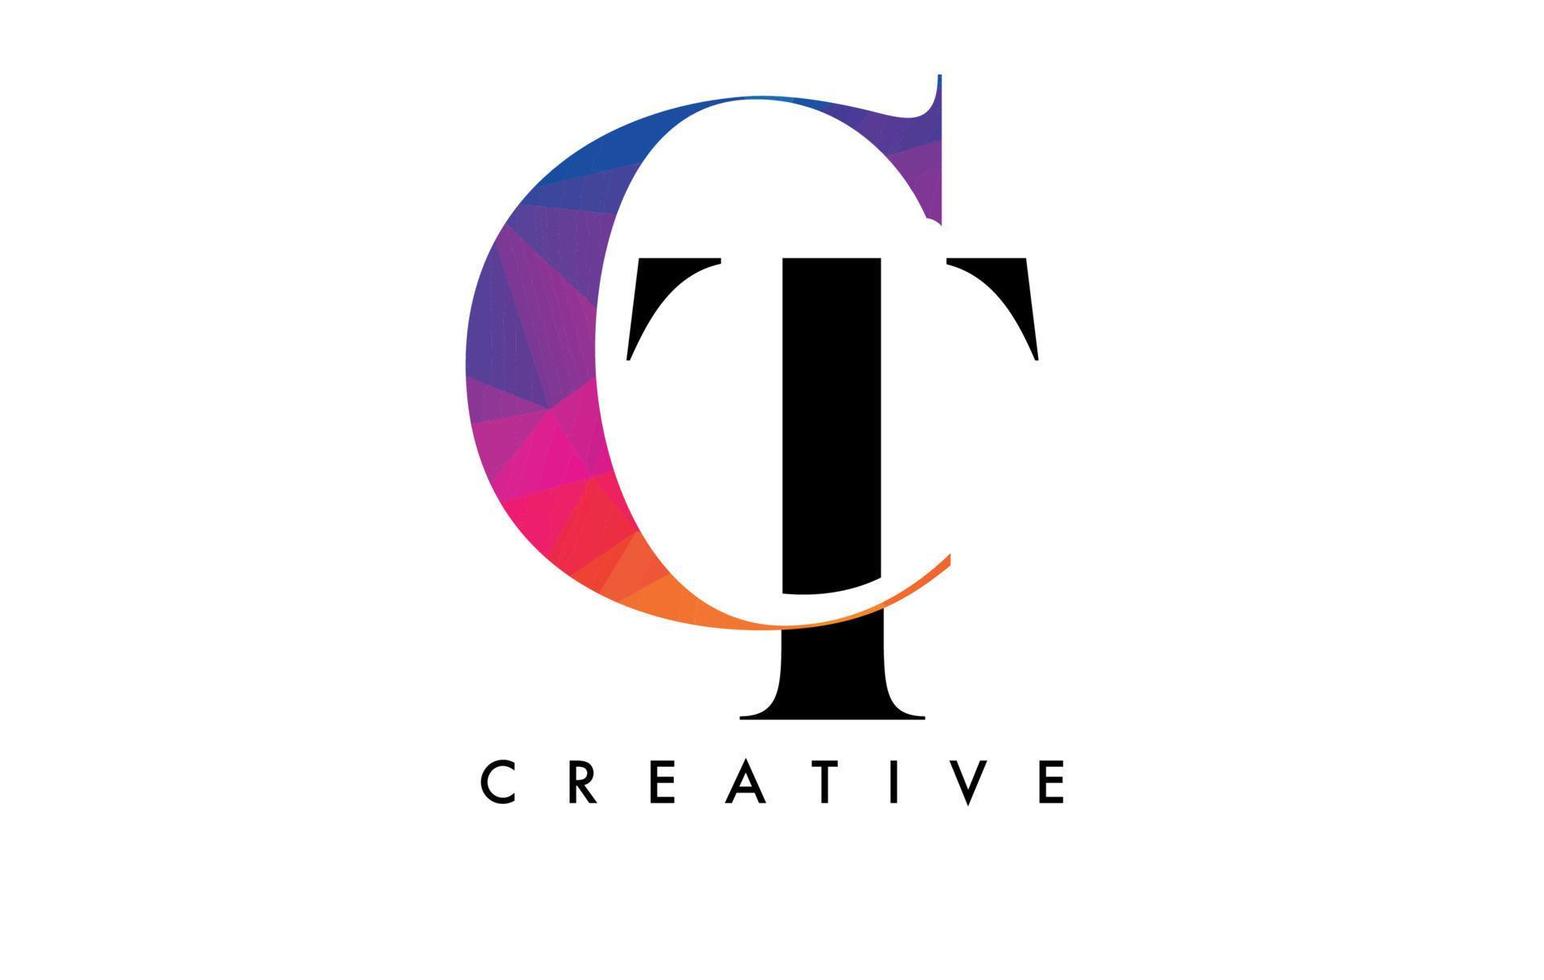 diseño de letras ct con corte creativo y textura colorida del arco iris vector